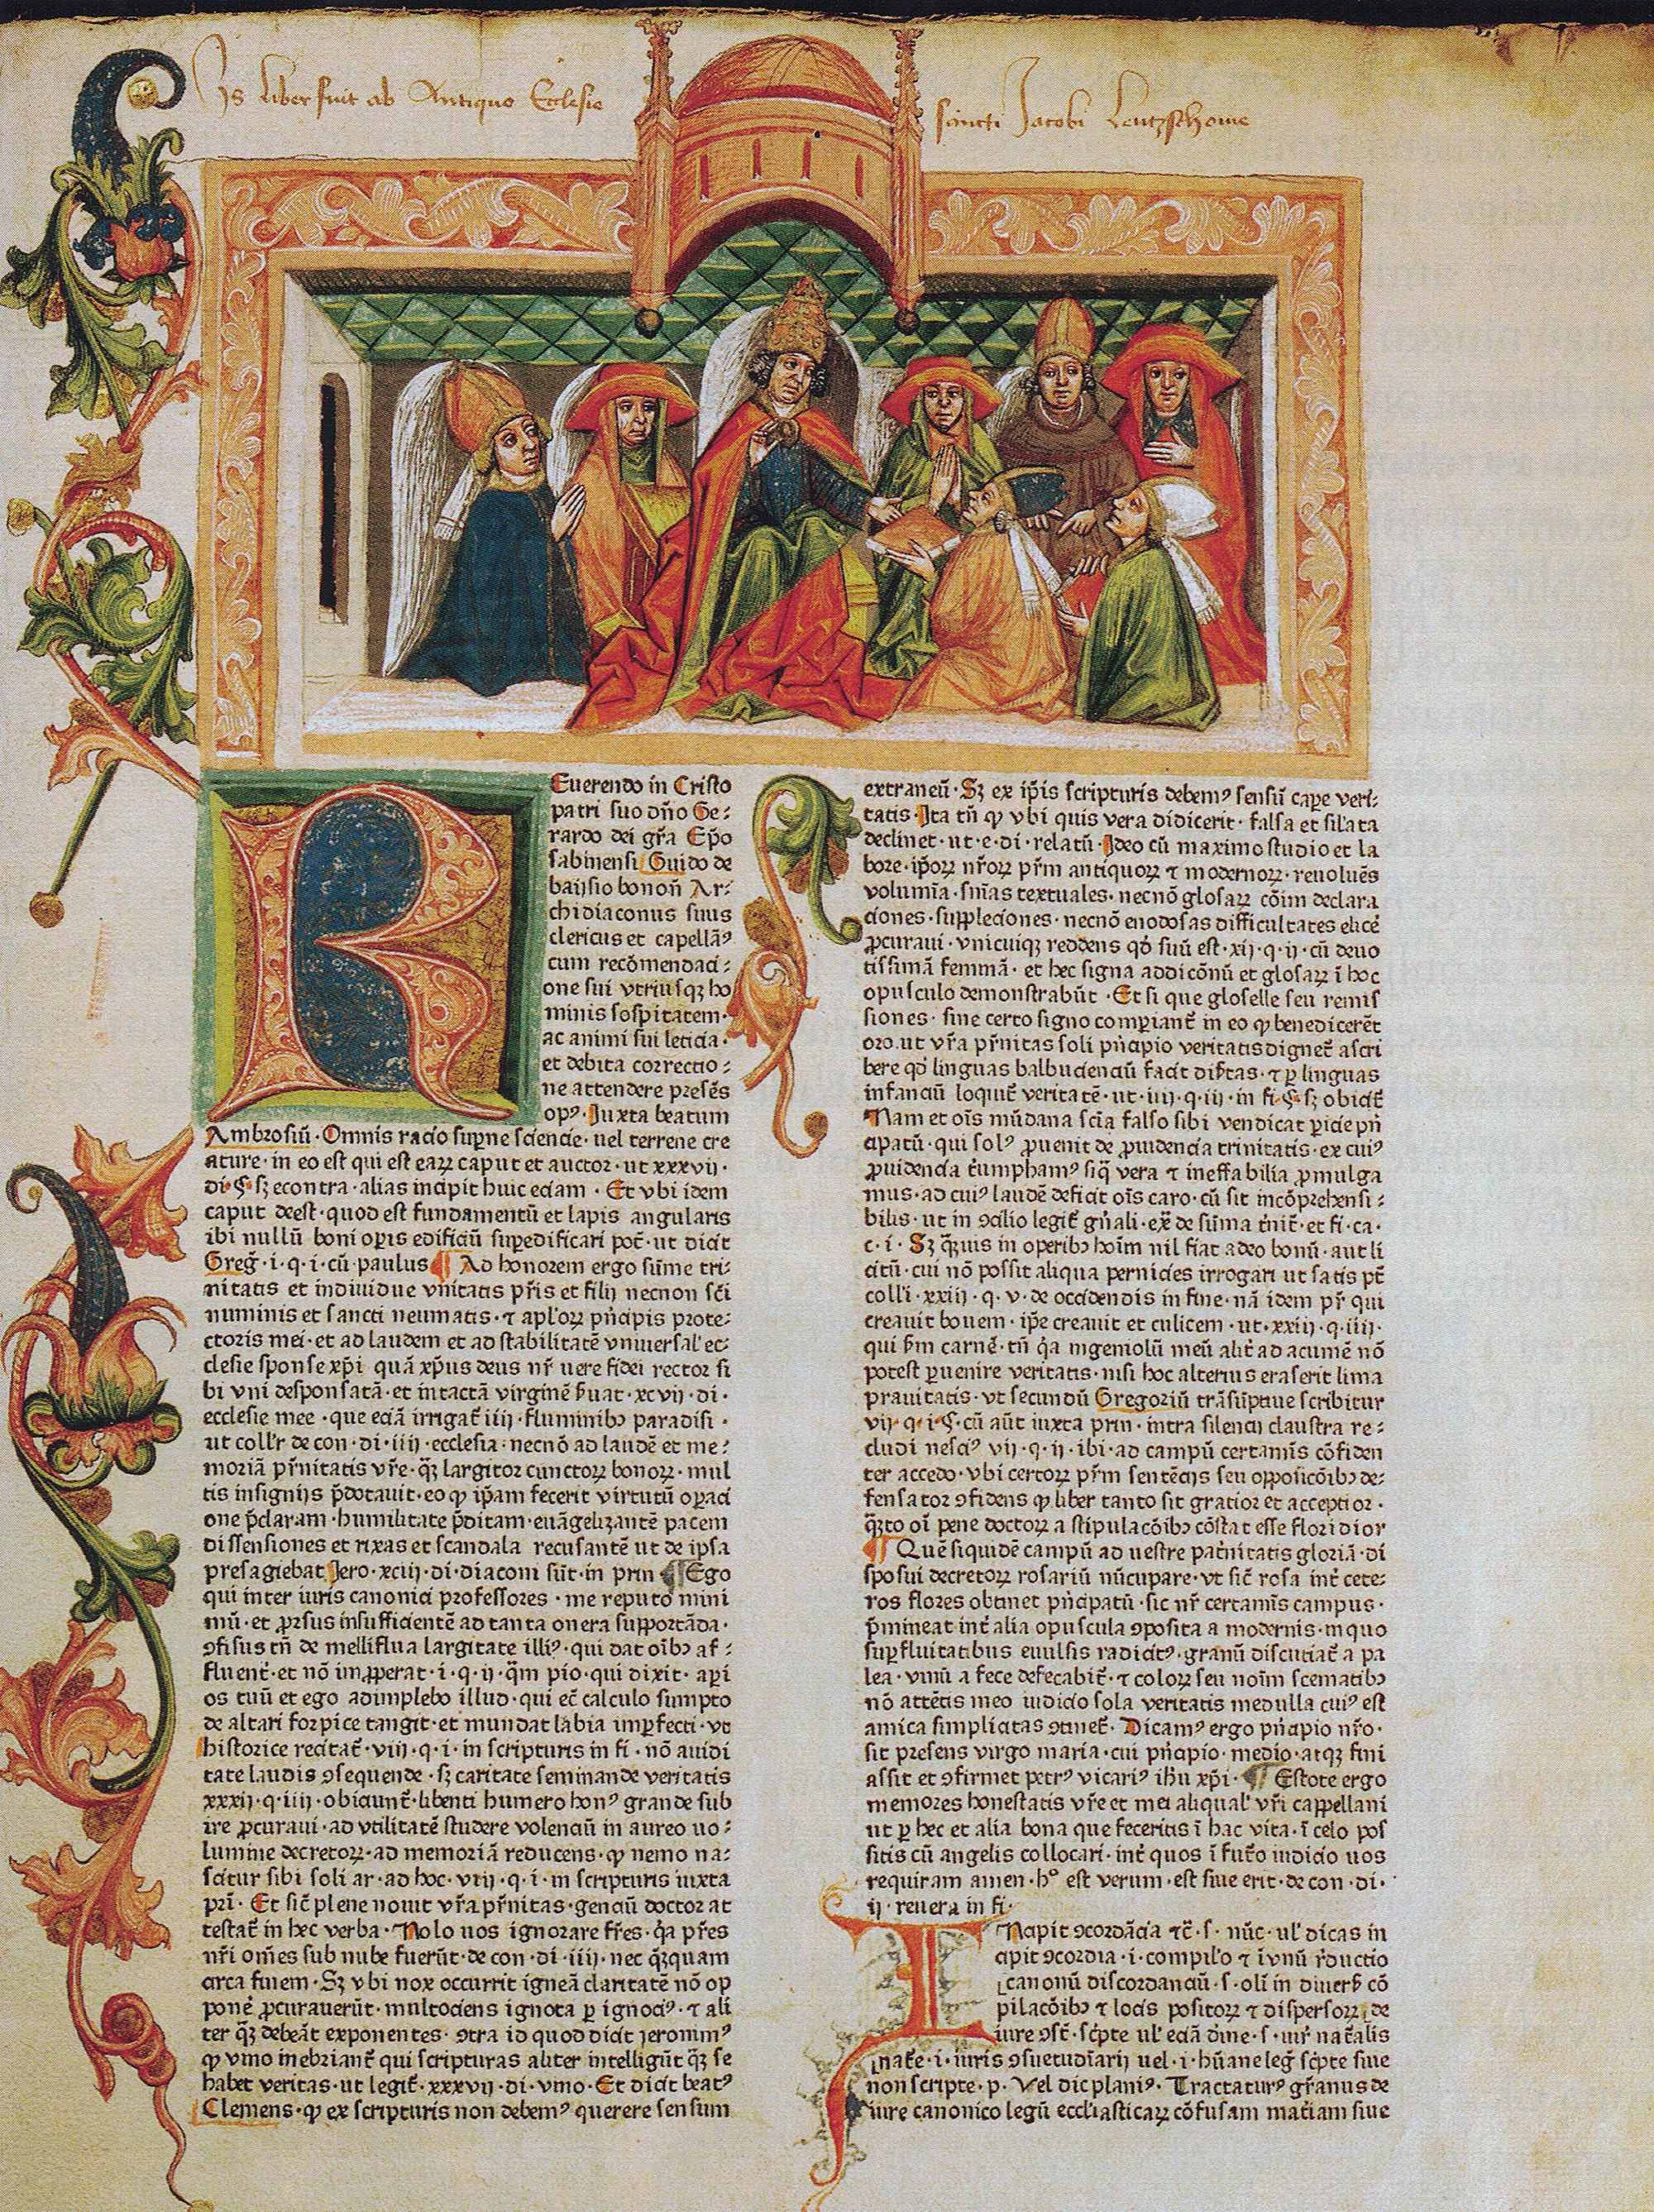 Vackert illustrerad medeltida boksida.